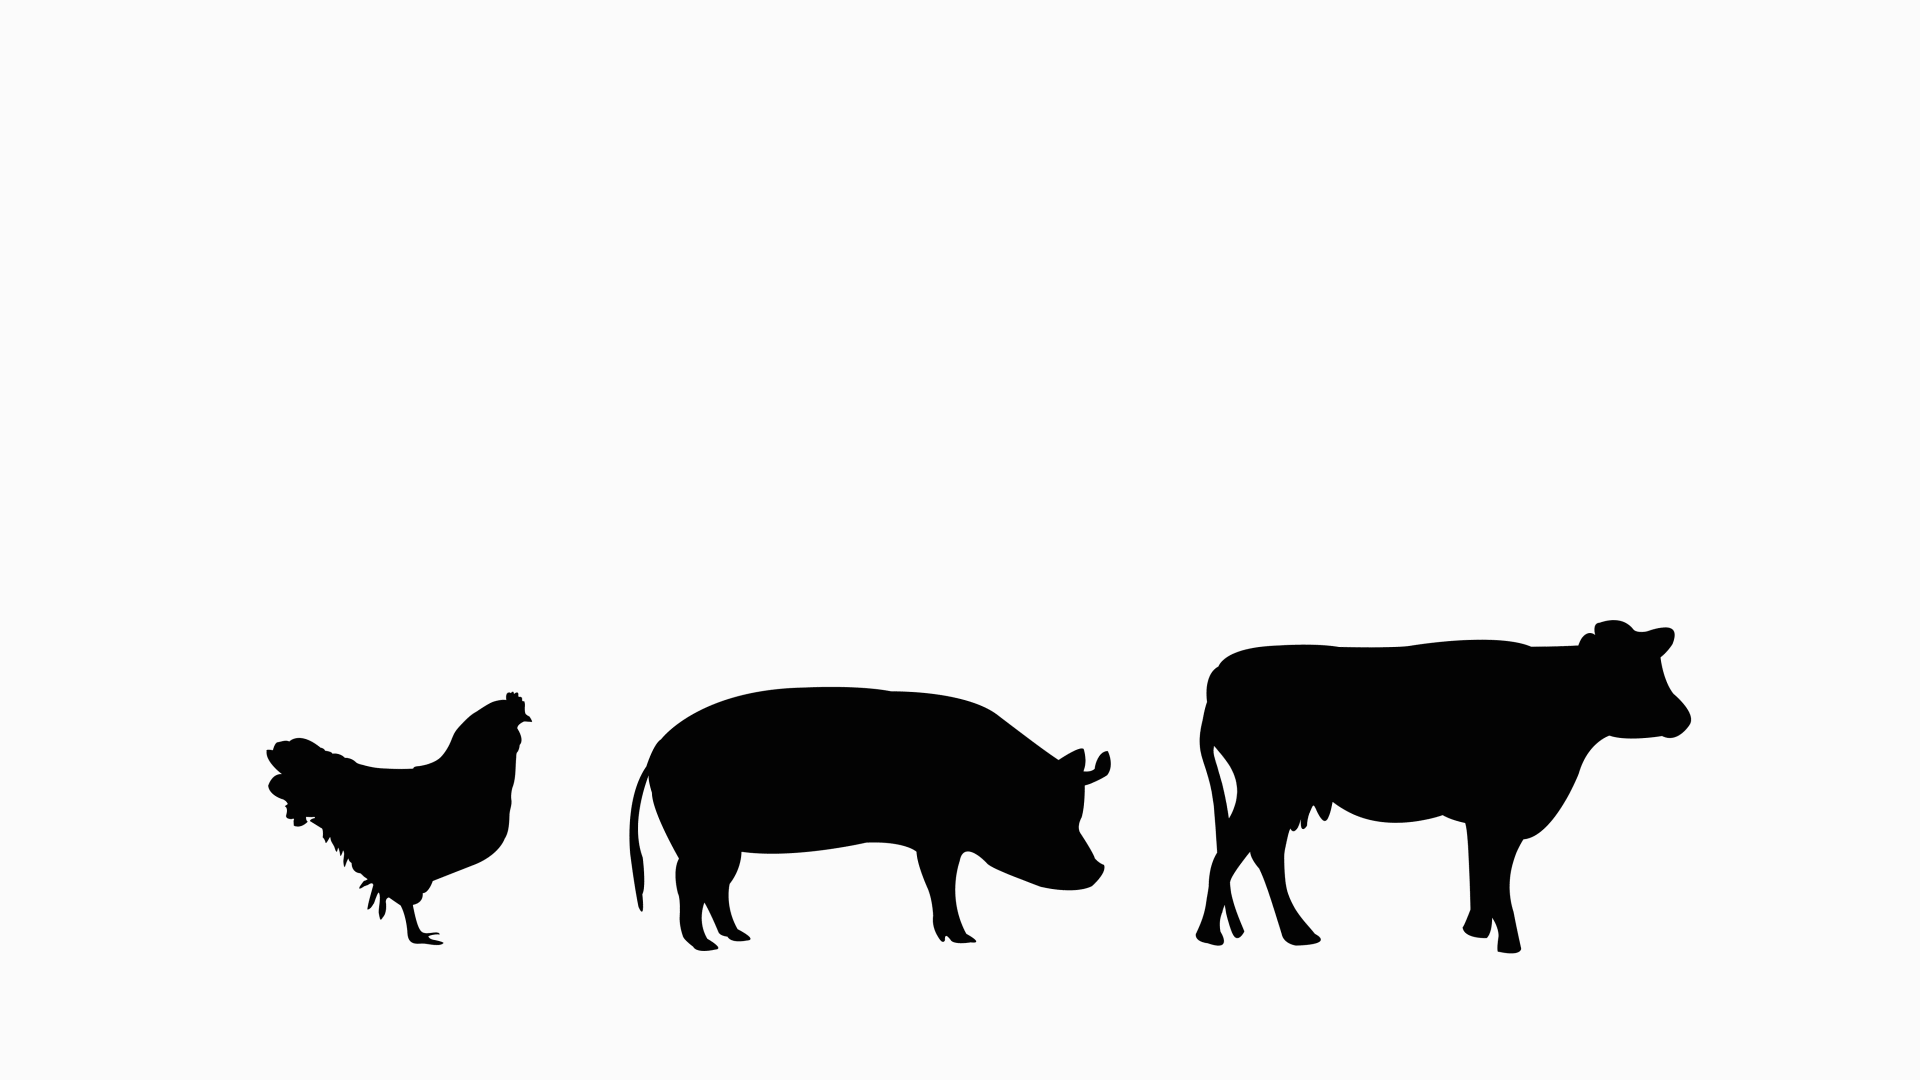 Smag af dyrevelfærd - Det korte svar er nej